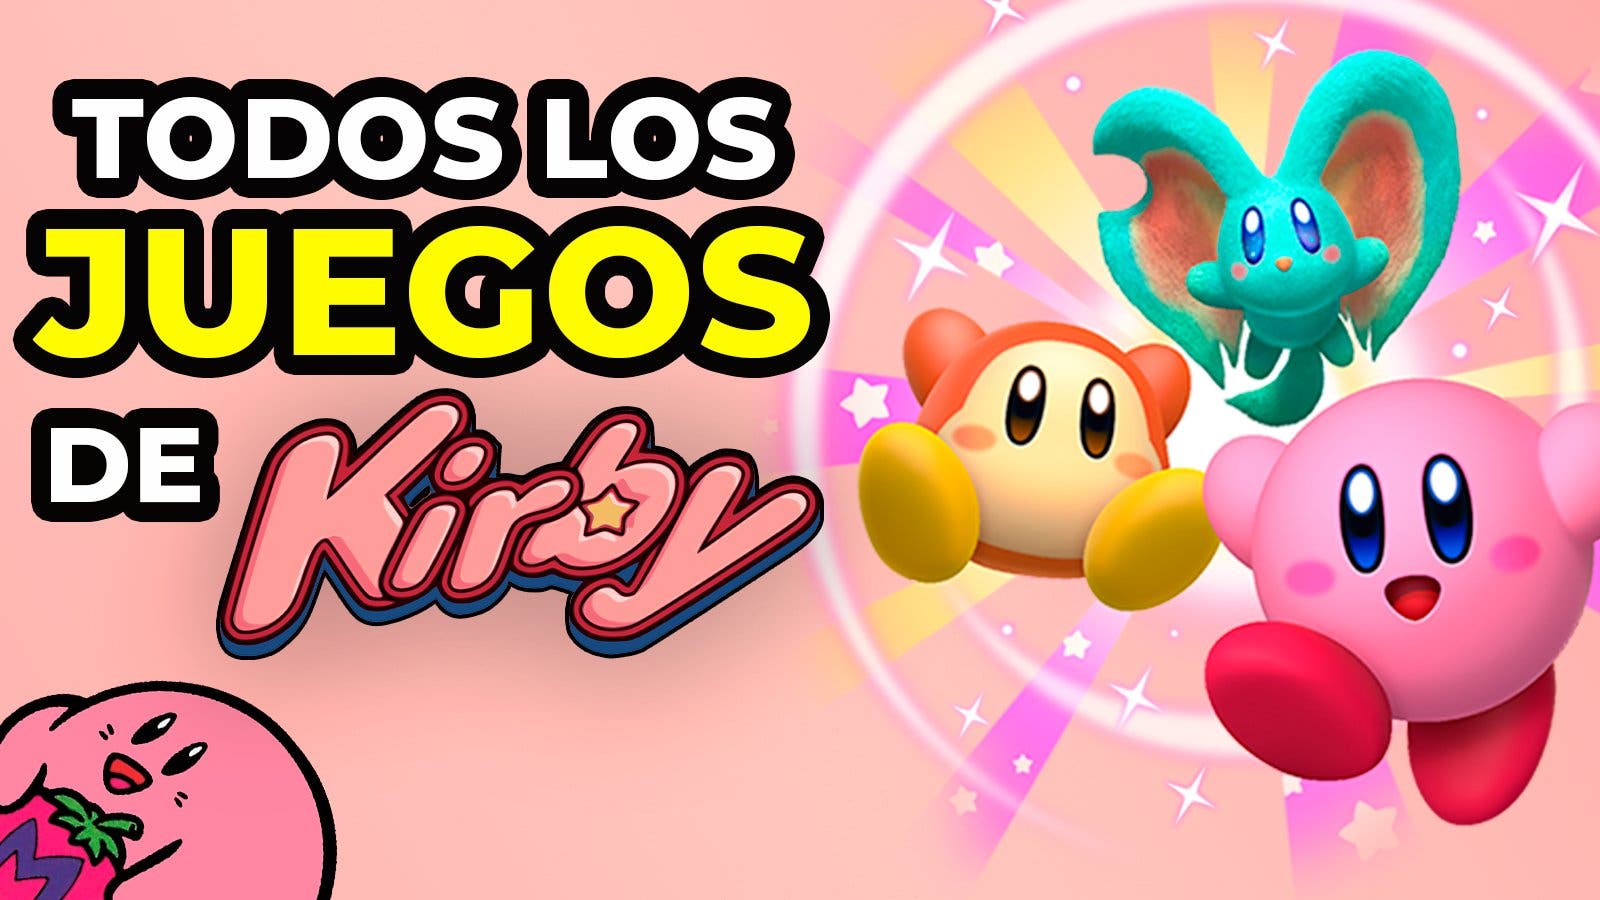 Todos los juegos de Kirby disponibles en Nintendo Switch - Nintenderos